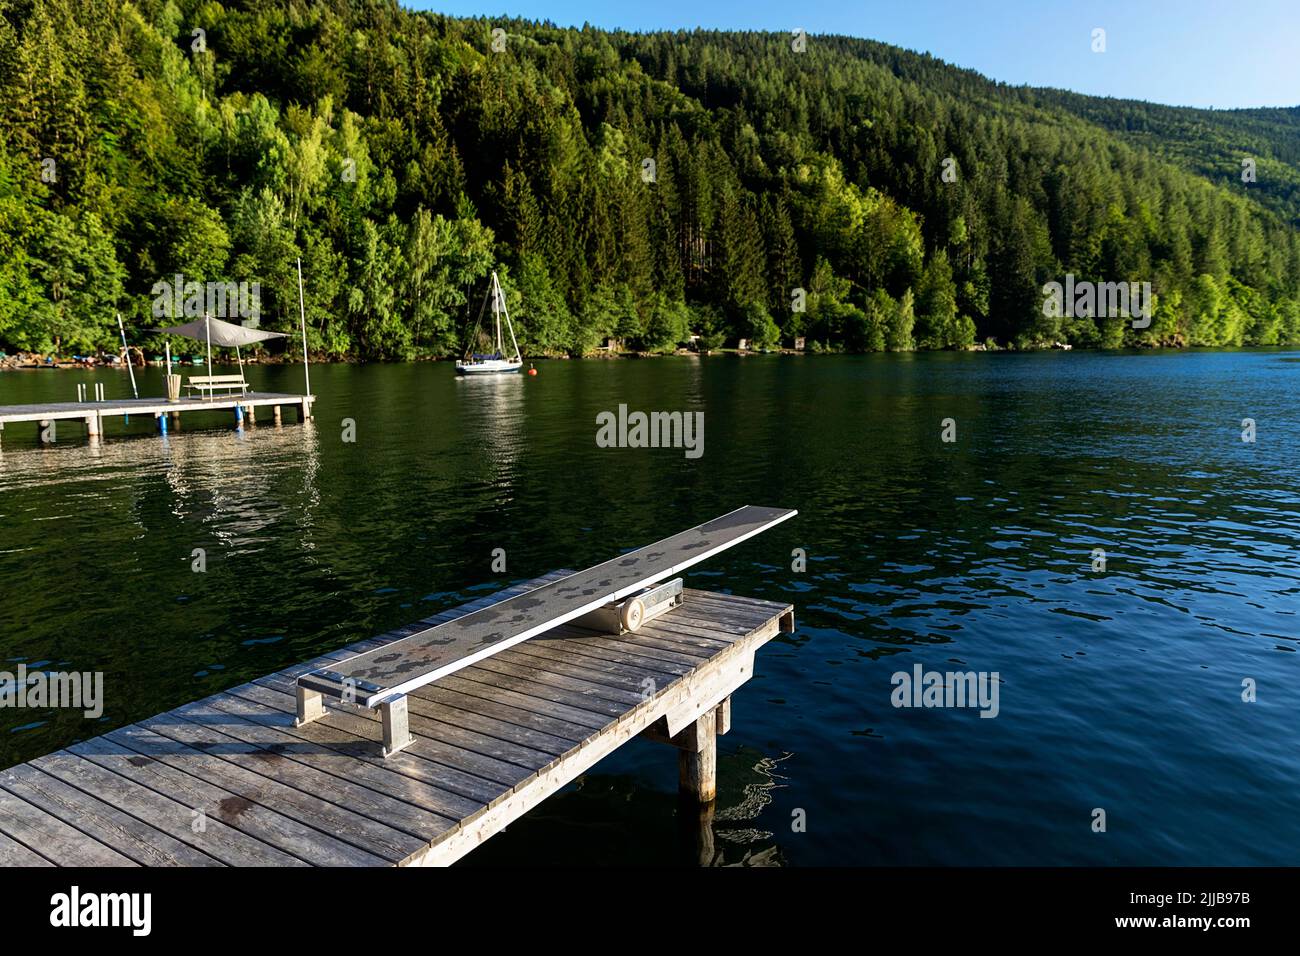 Piattaforma subacquea su un bellissimo molo in legno sul lago Millstätter See al tramonto, Carinzia, Austria Foto Stock